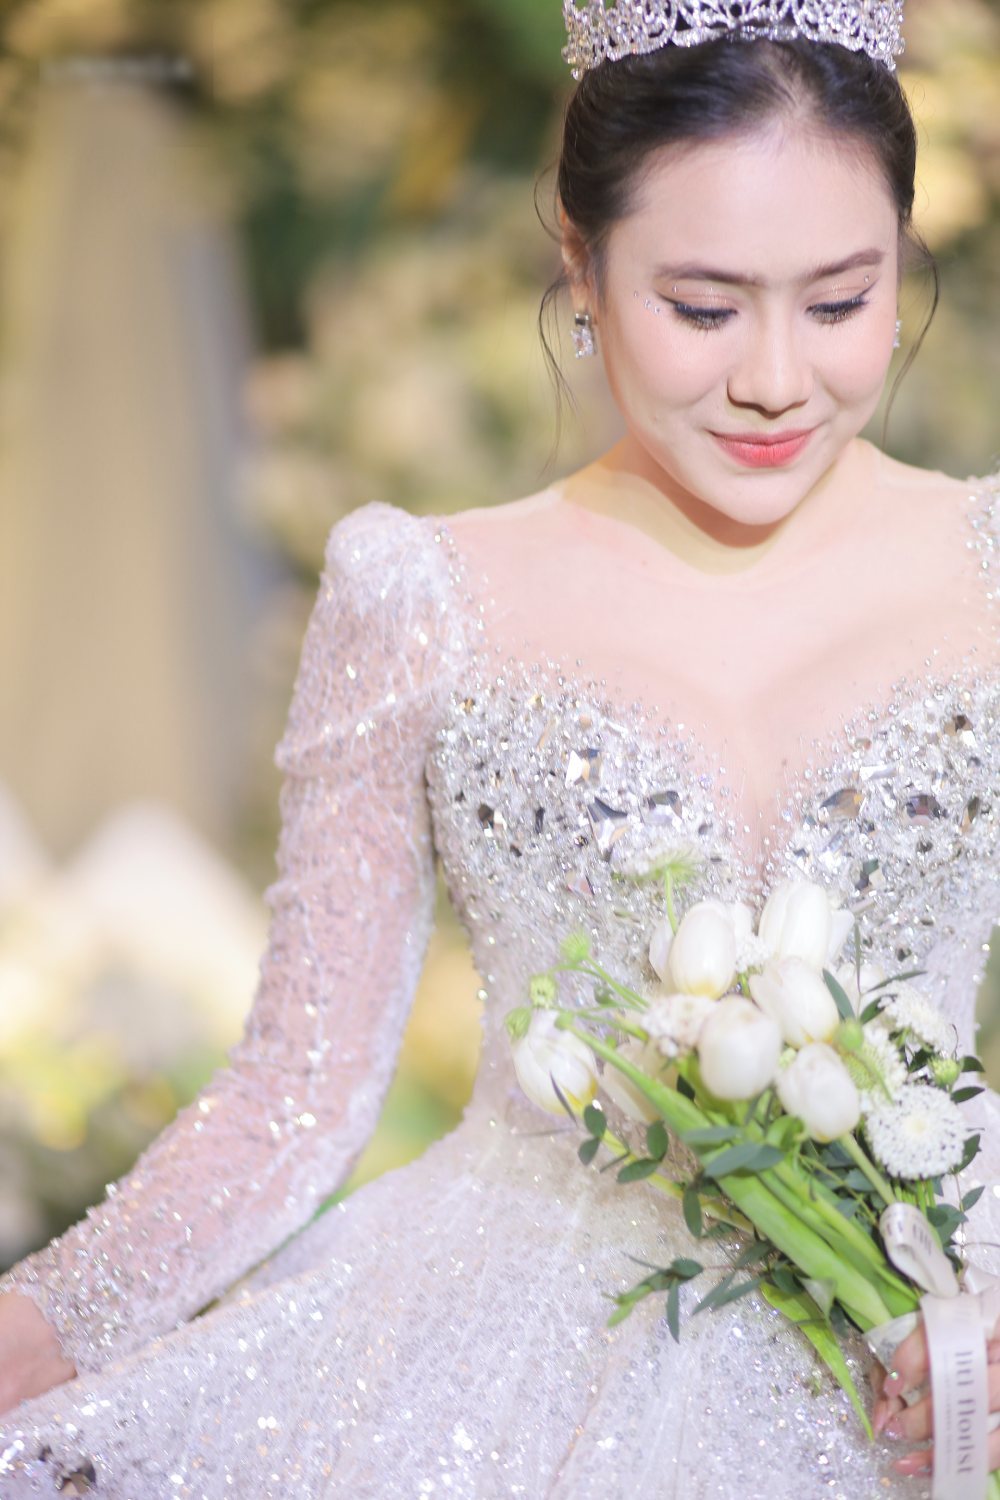  
Hồ Bích Trâm hóa thành công chúa trong đám cưới mà cô trông chờ từ lâu. (Ảnh NTK Linh Nga)